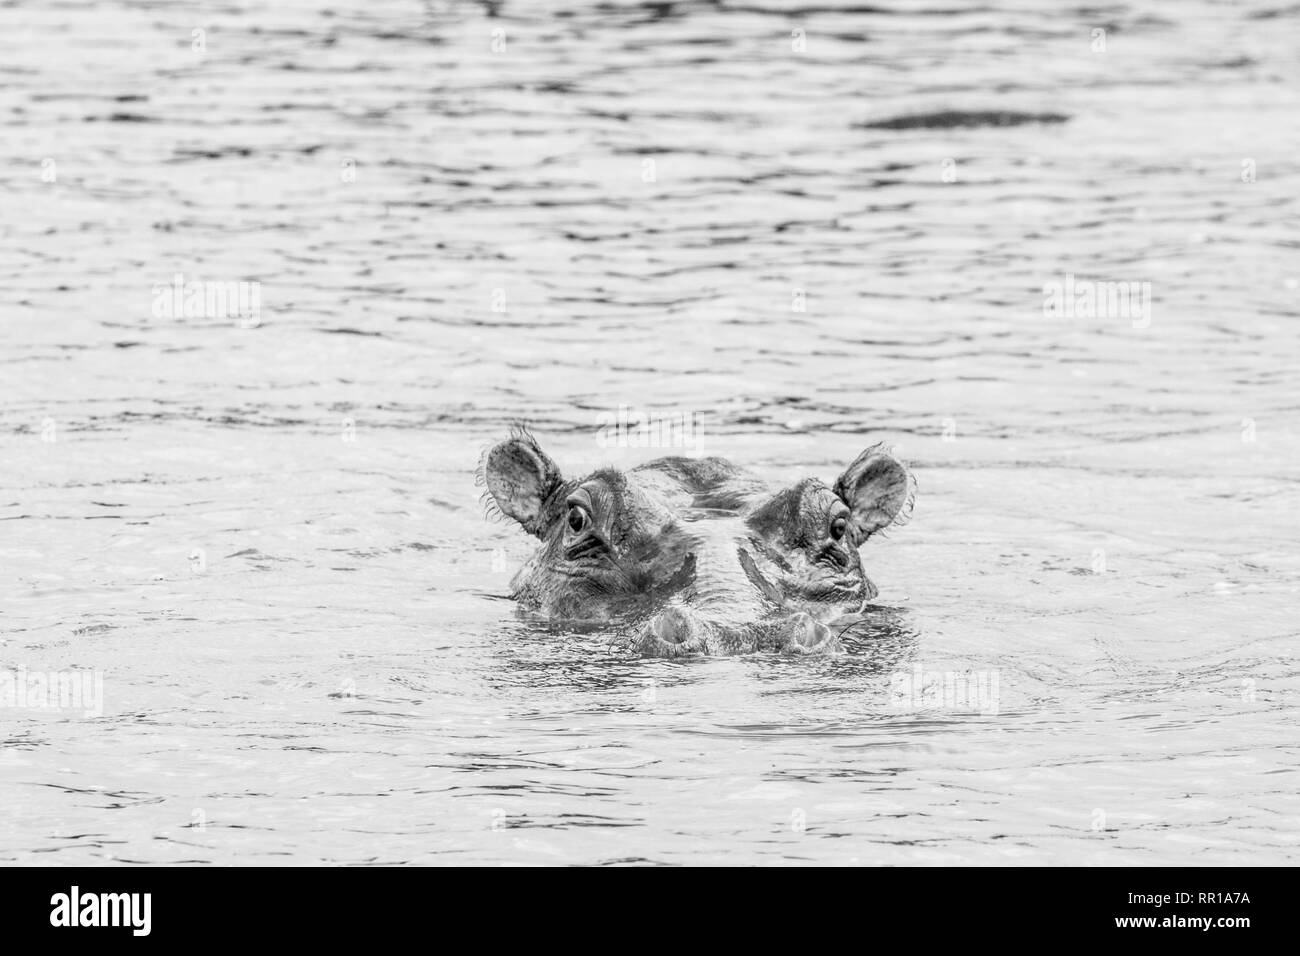 Un hippopotame immergé dans le canal de Kazinga avec juste sa tête visible Parc national de la Reine Elizabeth, Ouganda. En noir et blanc Banque D'Images